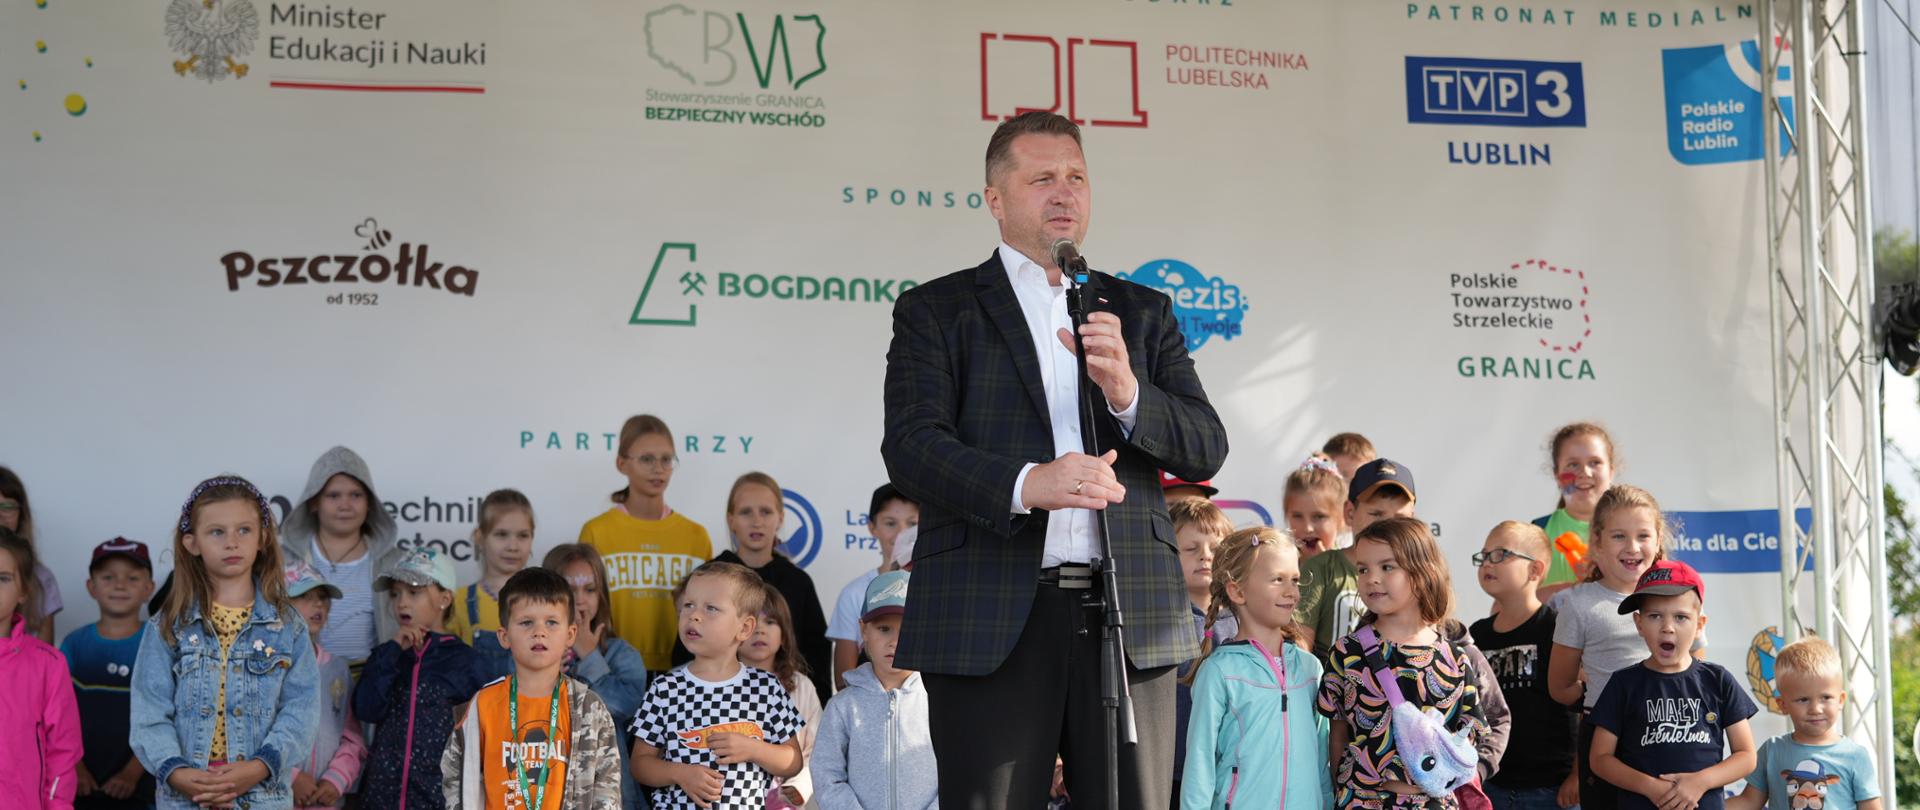 Minister Czarnek stoi i mówi do mikrofonu, za nim na estradzie z stoi duża grupa kolorowo ubranych dzieci.